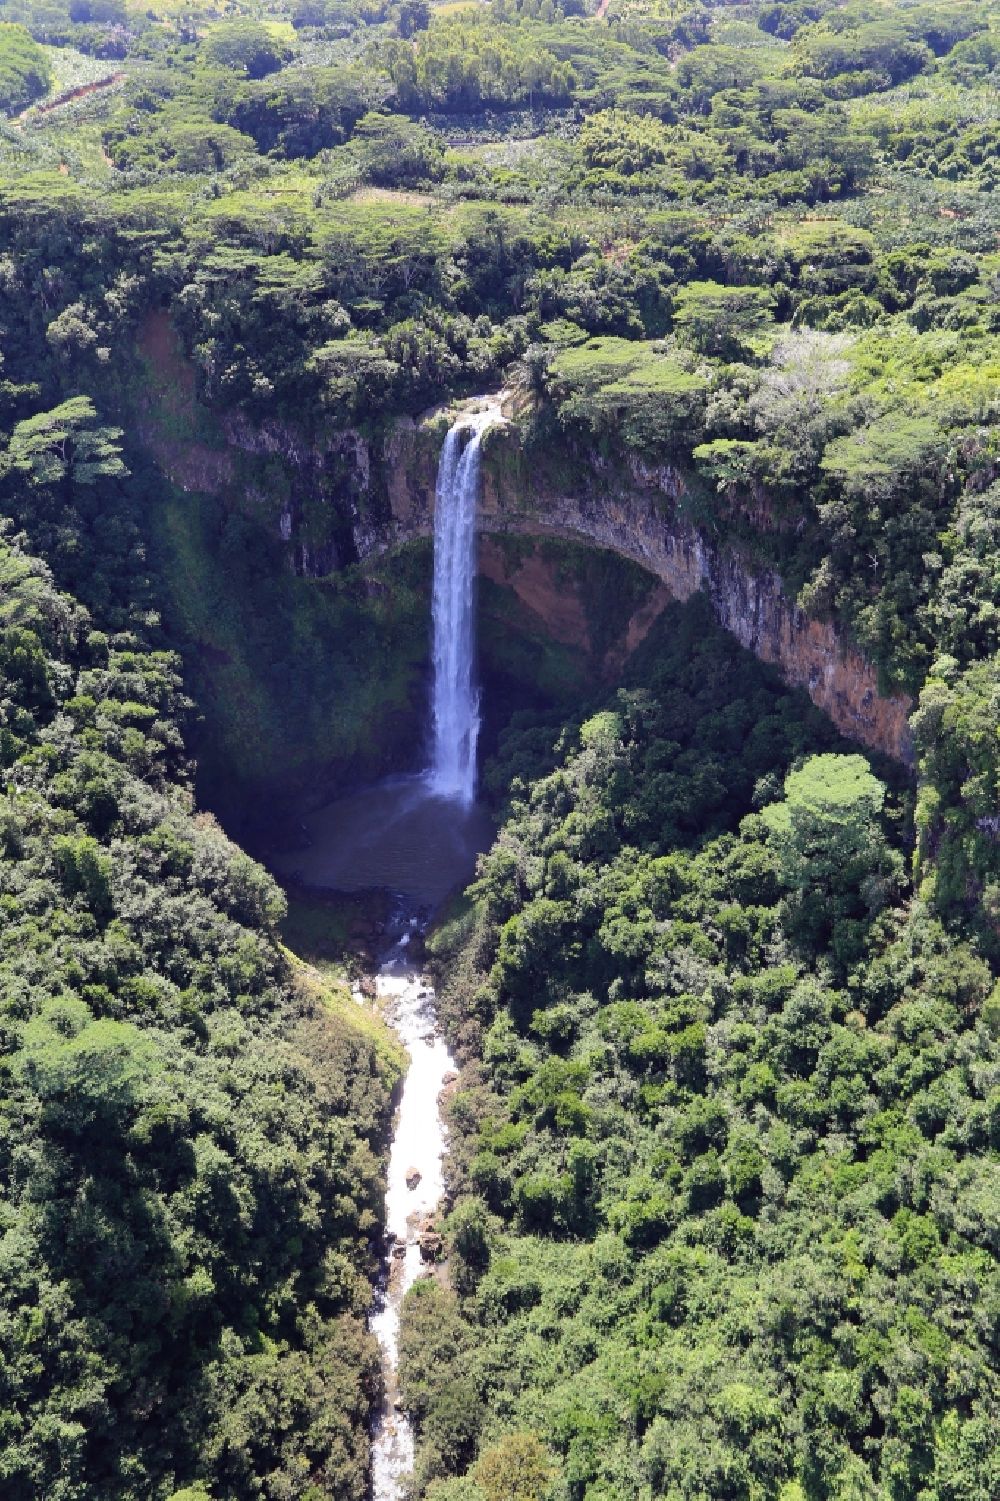 Luftaufnahme Chamarel Waterfall - Hoher Wasserfall von Chamarel auf der Insel Mauritius